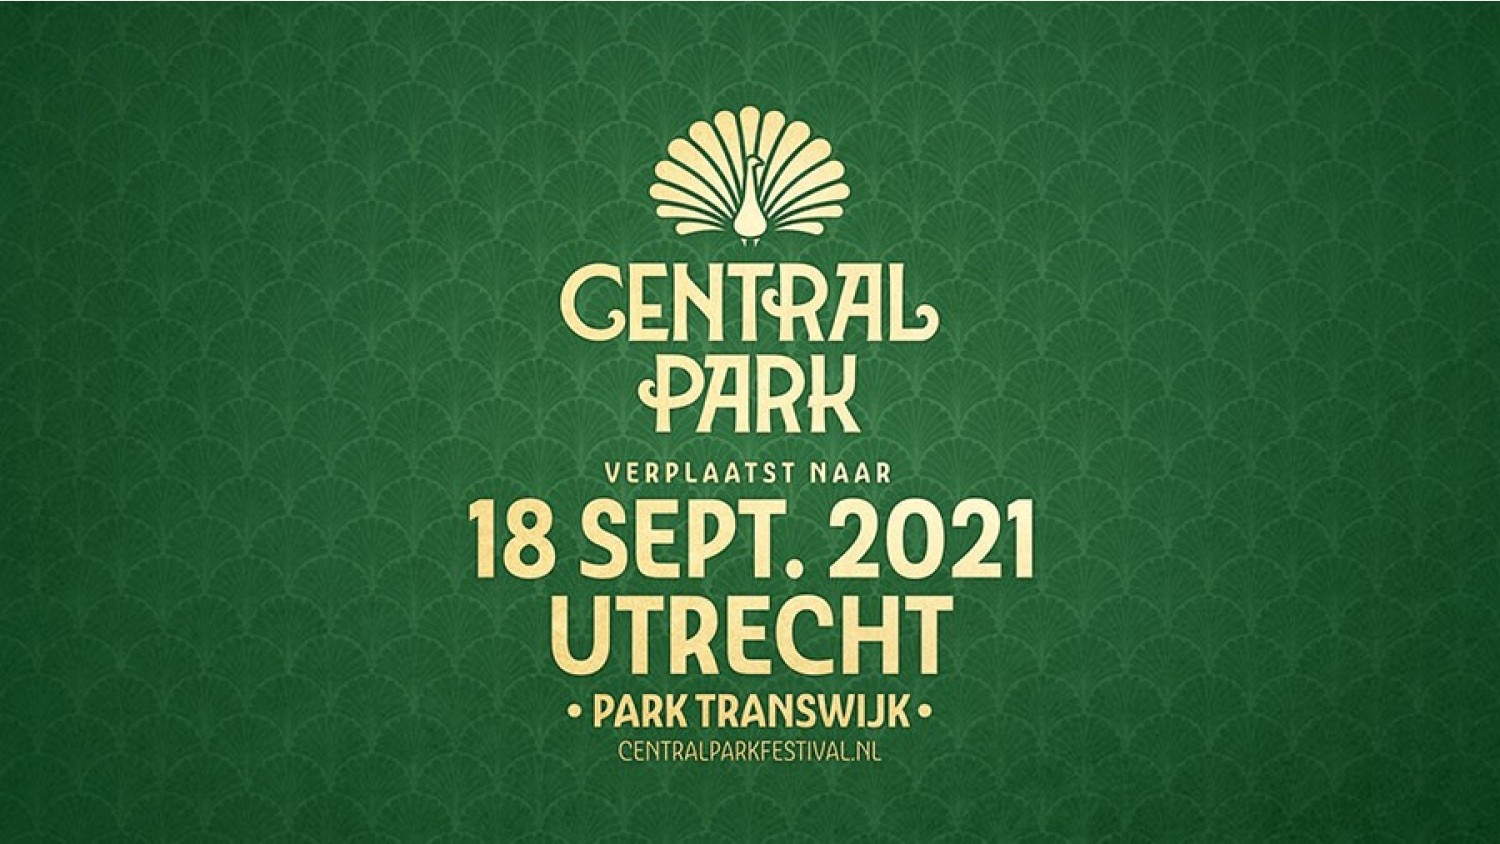 Party nieuws: Goed nieuws voor de fans van Central Park Festival